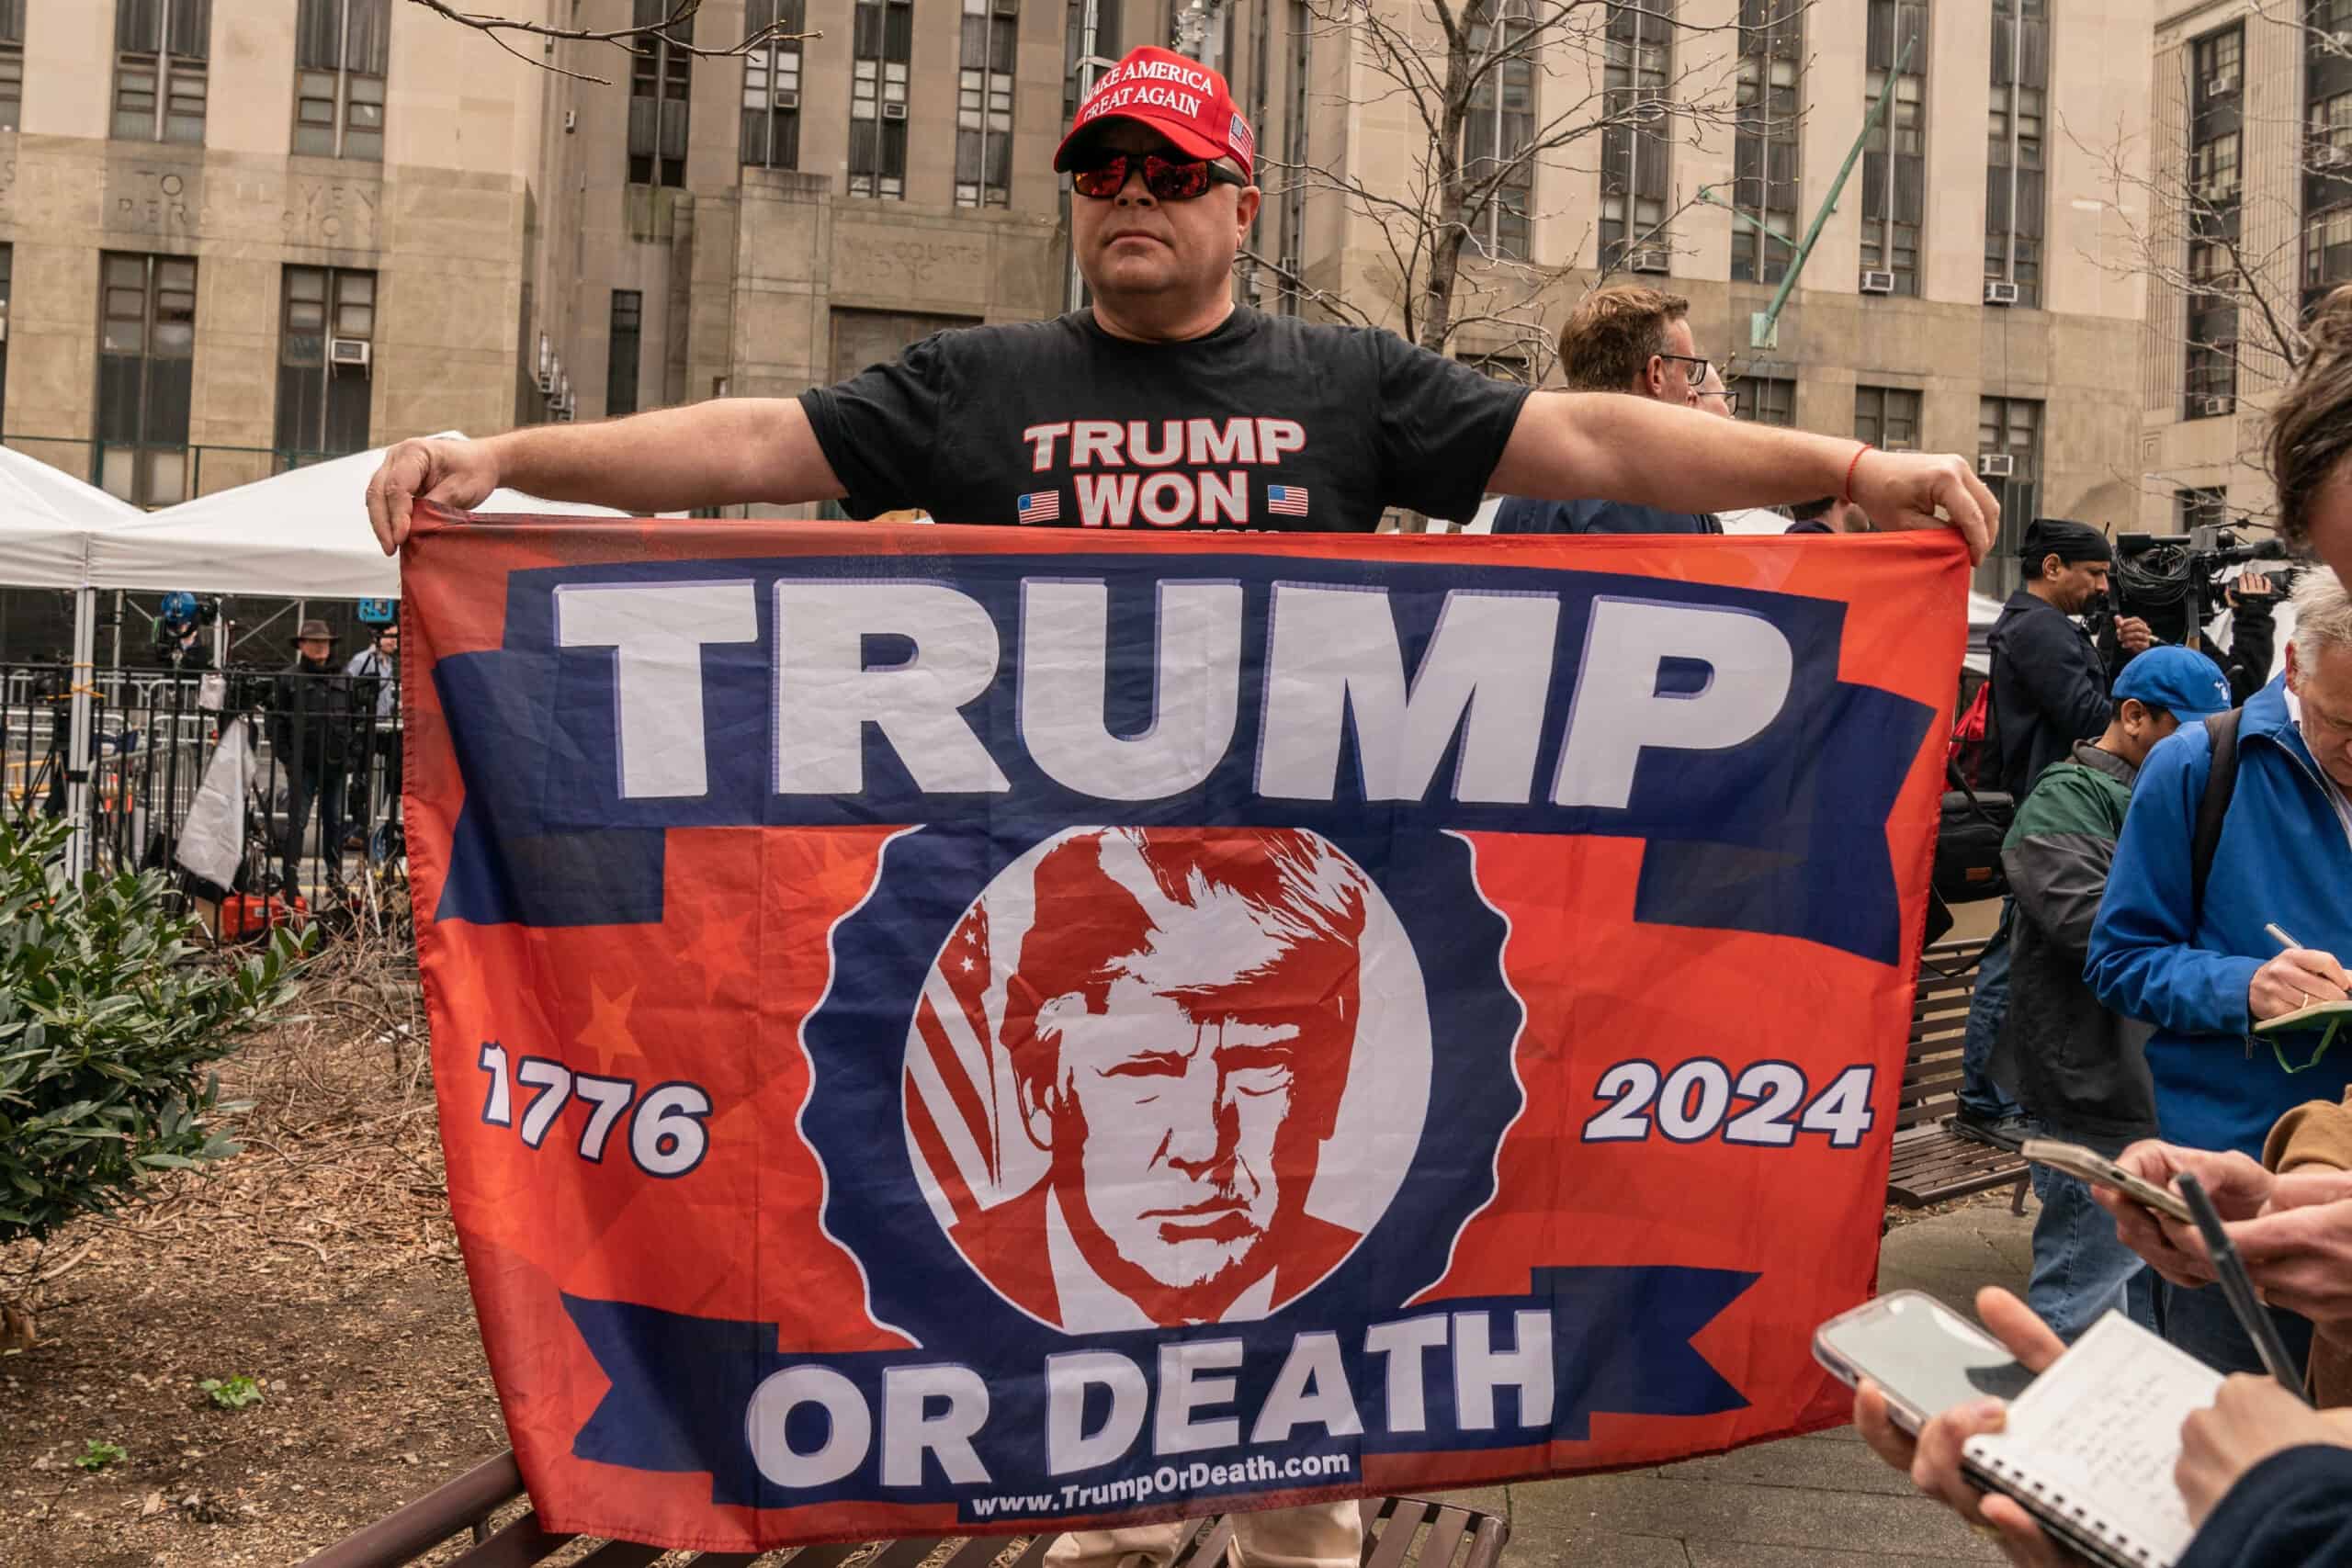 Trump or Death